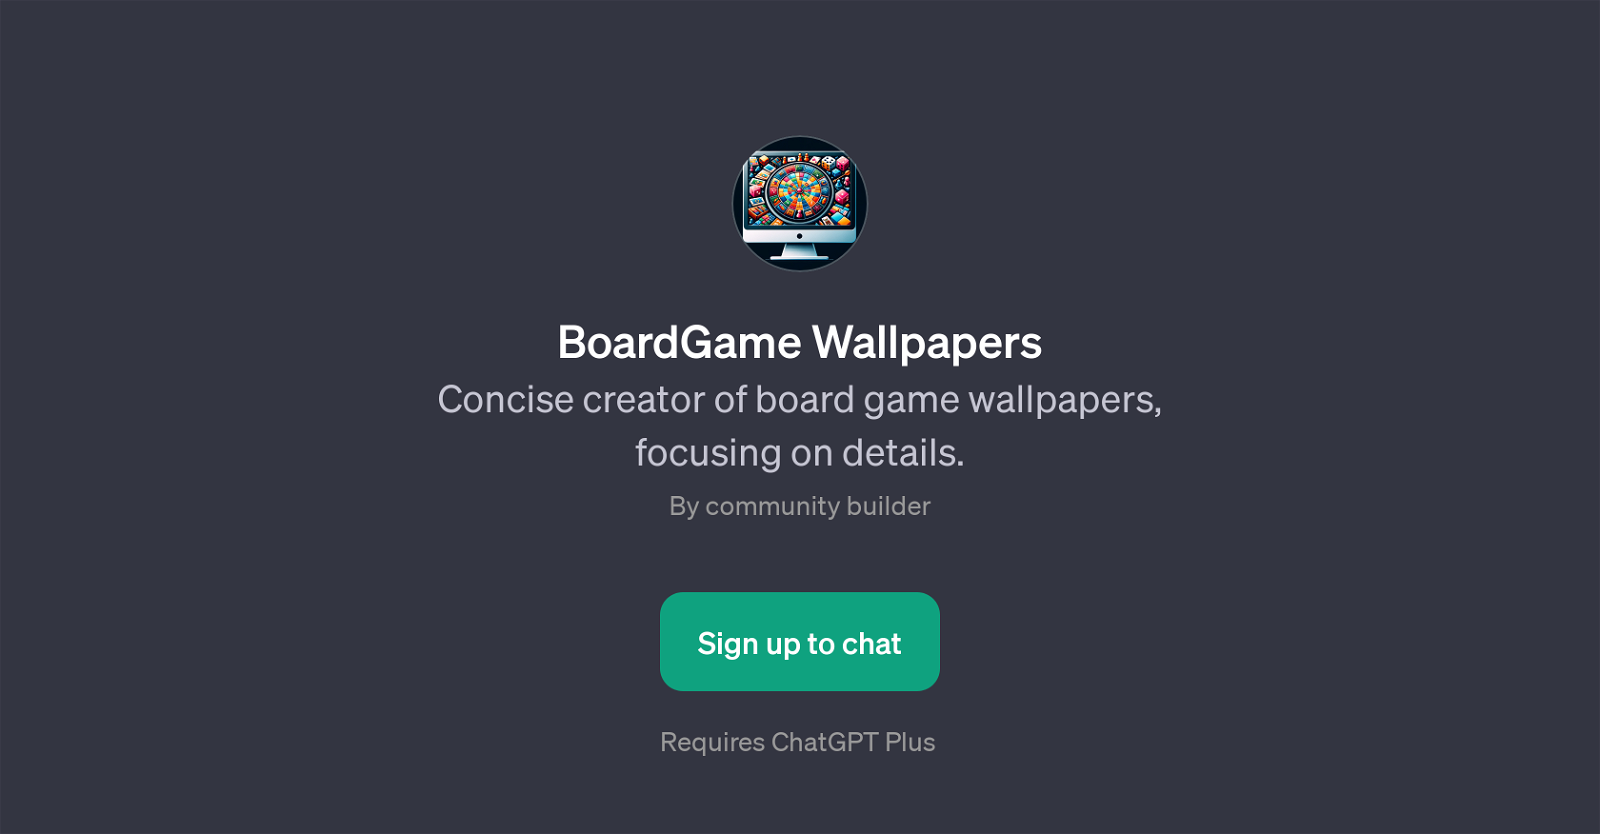 BoardGame Wallpapers website